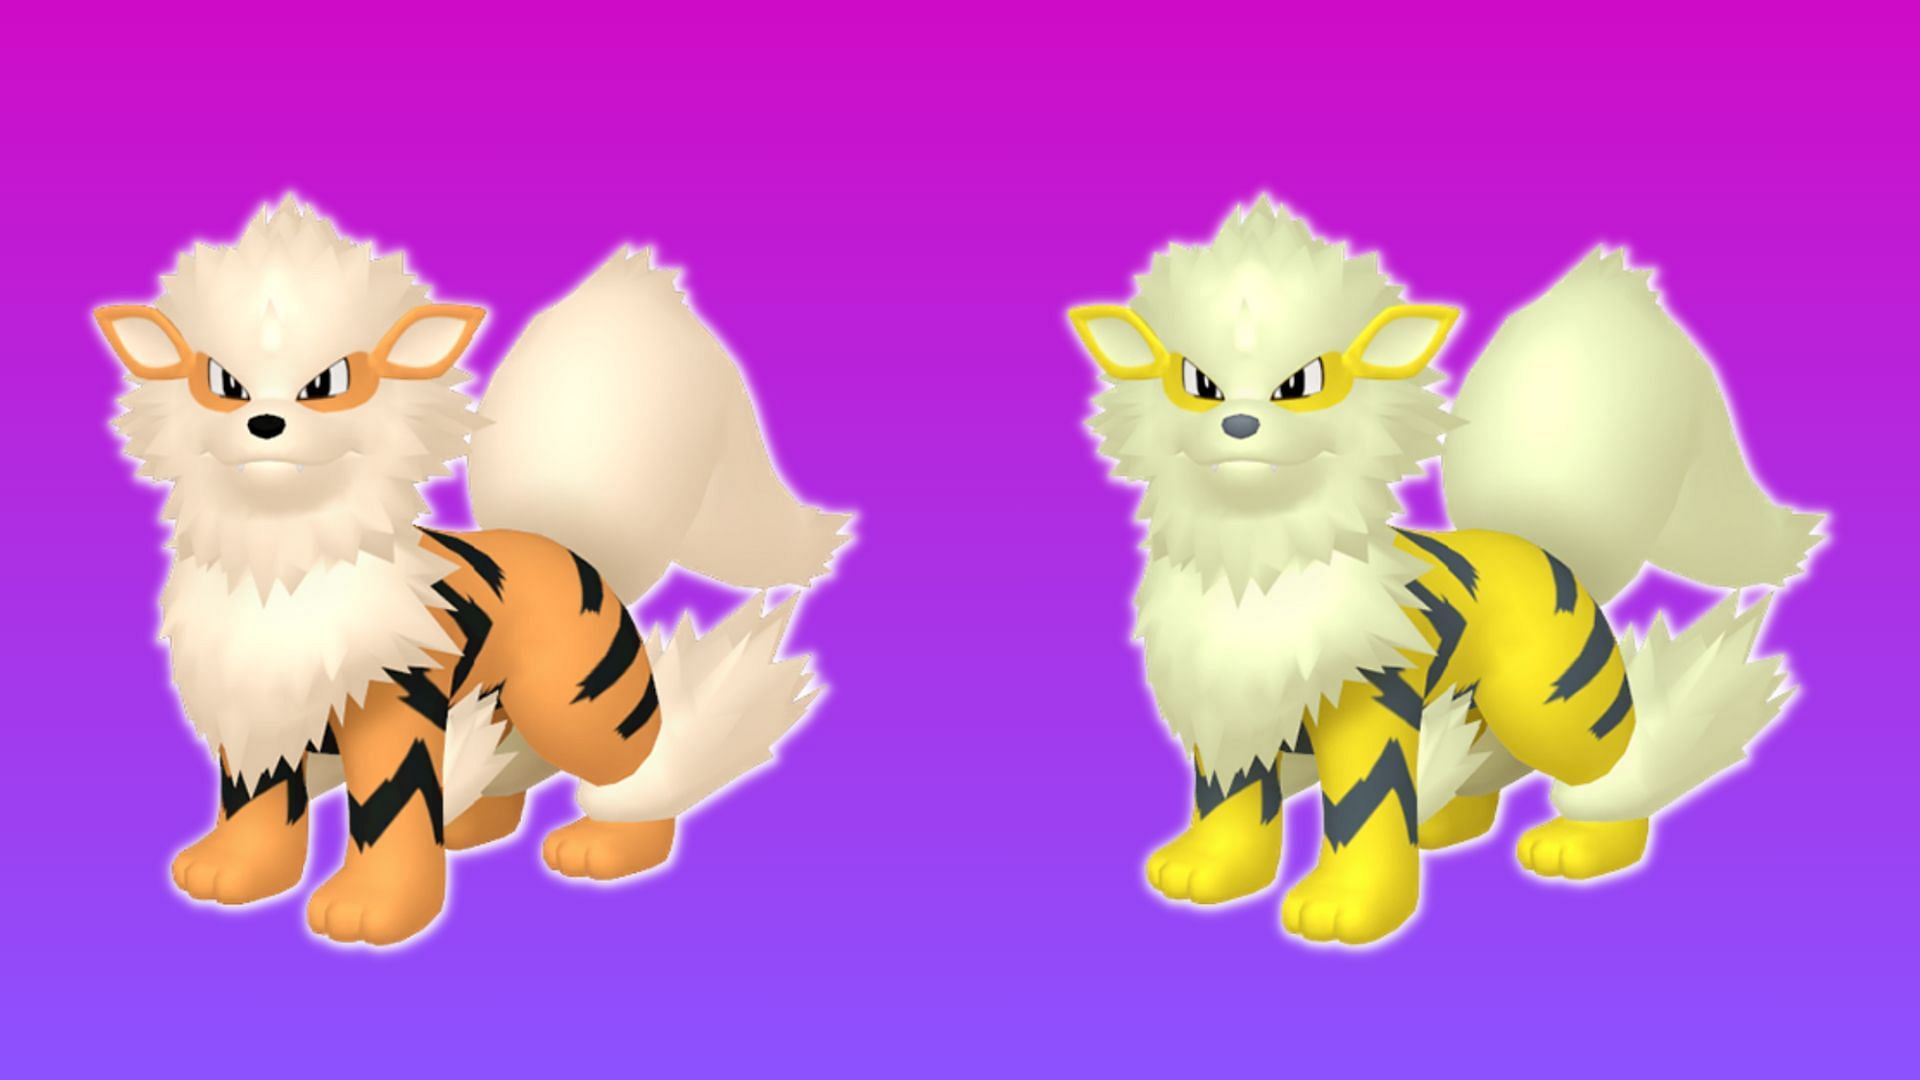 Is Growlithe Shiny in Pokémon Go? - Polygon